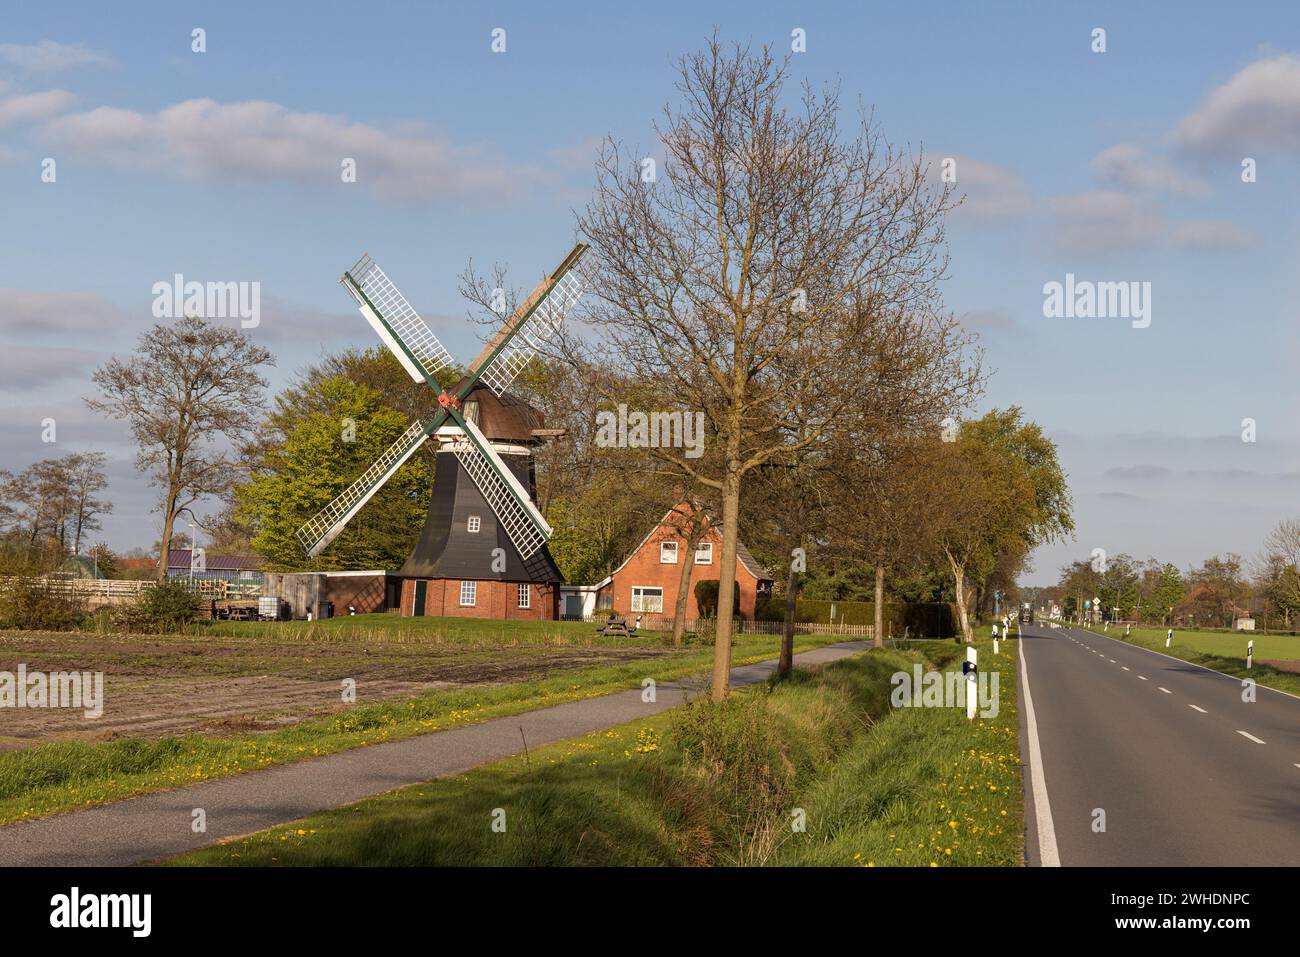 Windö¸hle, ëTjadens ö¸hleë, ö¸dcoldinne, municipality of Groï¬‚heide, East Frisia, Lower Saxony, Stock Photo